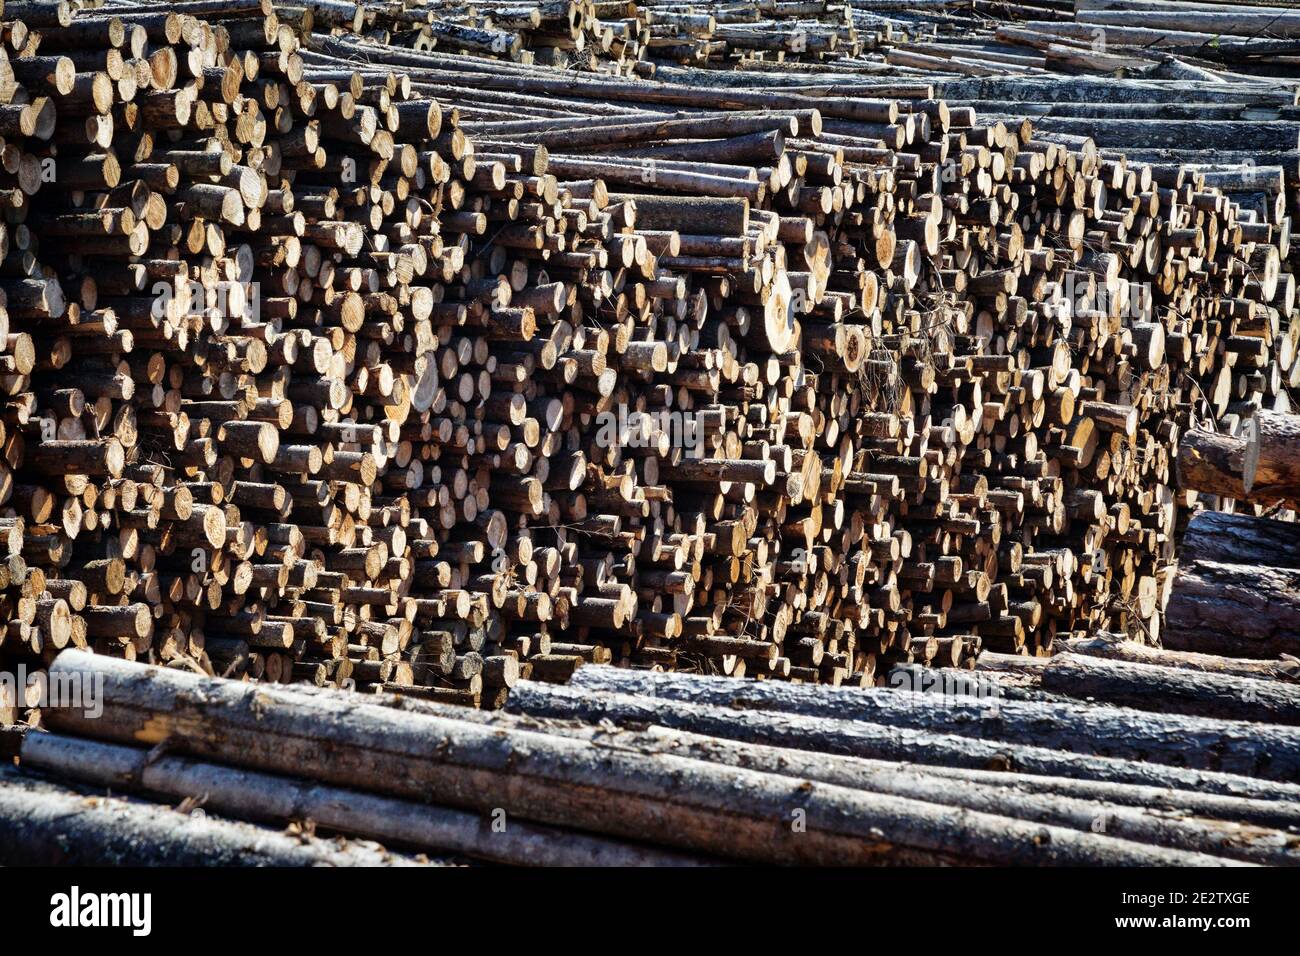 Endschnitt und riesige Stapel von Rundholz (Holzstapel, Tanne) im Mischwaldgebiet Europas Stockfoto